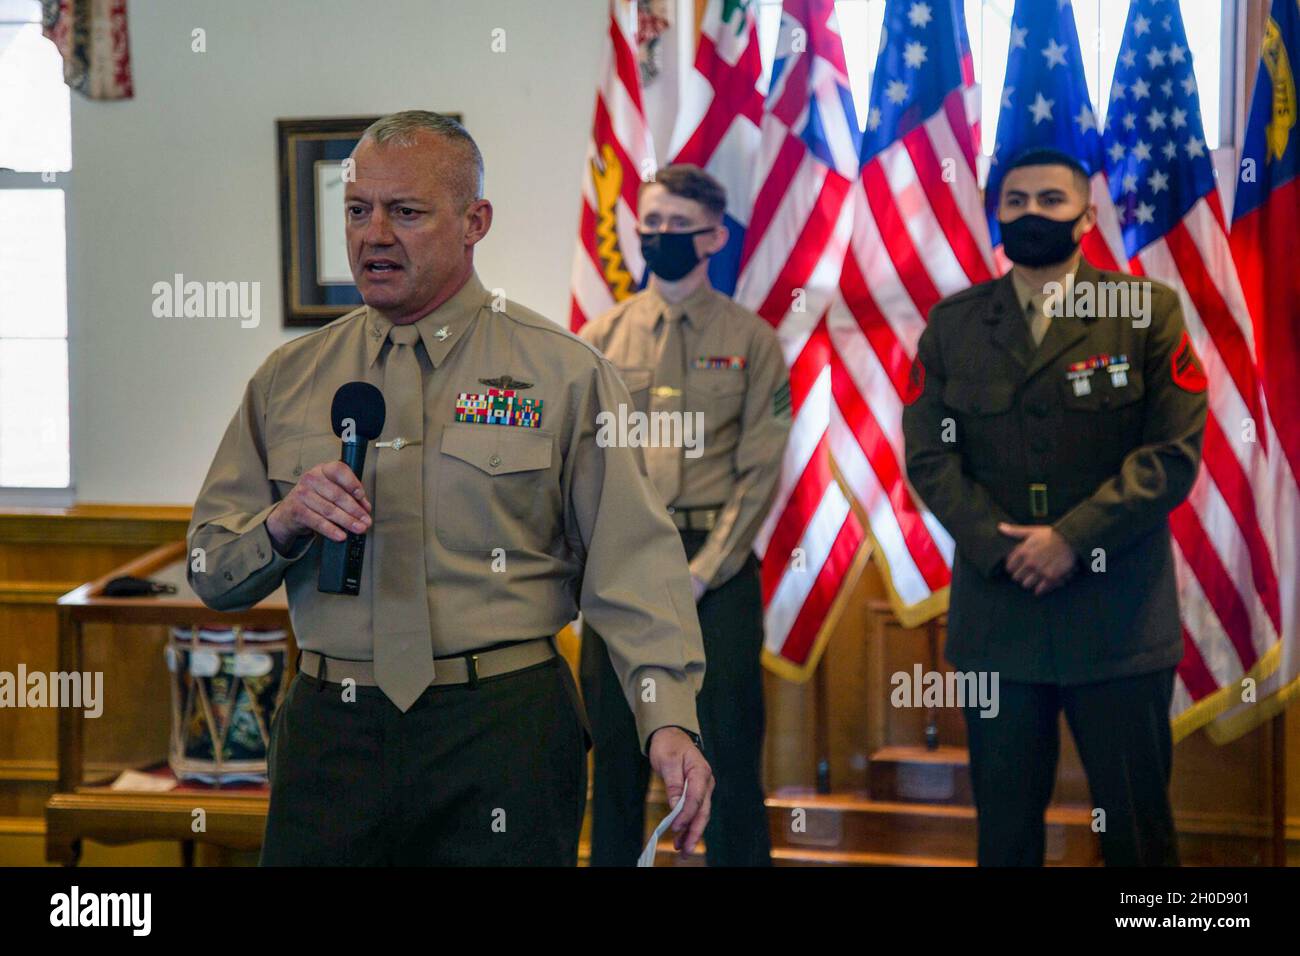 El Coronel Nicholas Davis, de la izquierda, jefe de personal de instalaciones del Cuerpo de Marines, Campamento Lejeune de la Base del Cuerpo de Marines del Este, da comentarios durante una ceremonia de reconocimiento en honor a los Miembros del Servicio del Mes (SMOM) para diciembre de 2020 y enero de 2021 en el edificio 1 en el Campamento Lejeune de la MCB, Carolina del Norte, 29 de enero de 2021. La Cámara de Comercio de Jacksonville-Onslow, Comité de Asuntos Militares (MAC), reconoció a Sgt. Richard Thomas IV, como el SMOY y Cpl. Manuel Geuvararéyes como el SMOM por su sobresaliente desempeño y dedicación al Cuerpo de Infantería de Marina. Foto de stock